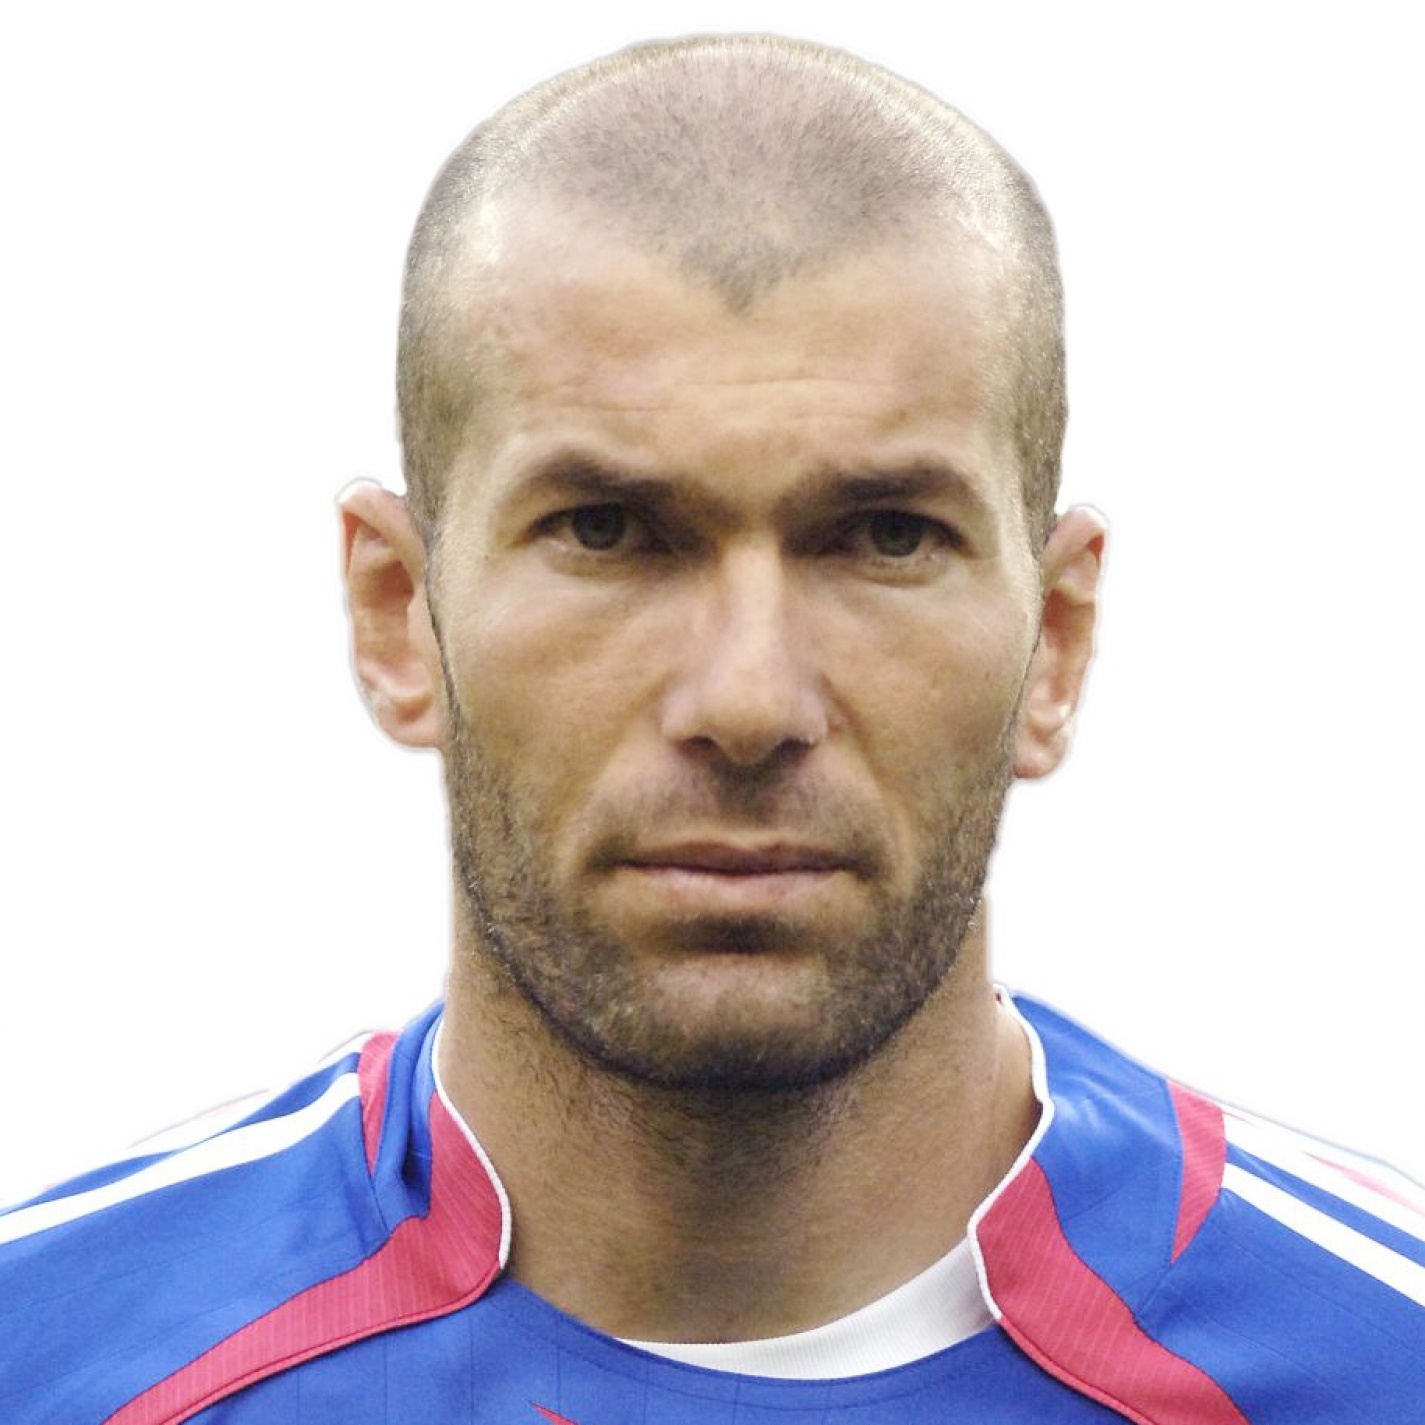 Foto principal de Z. Zidane | Real Madrid Leyendas